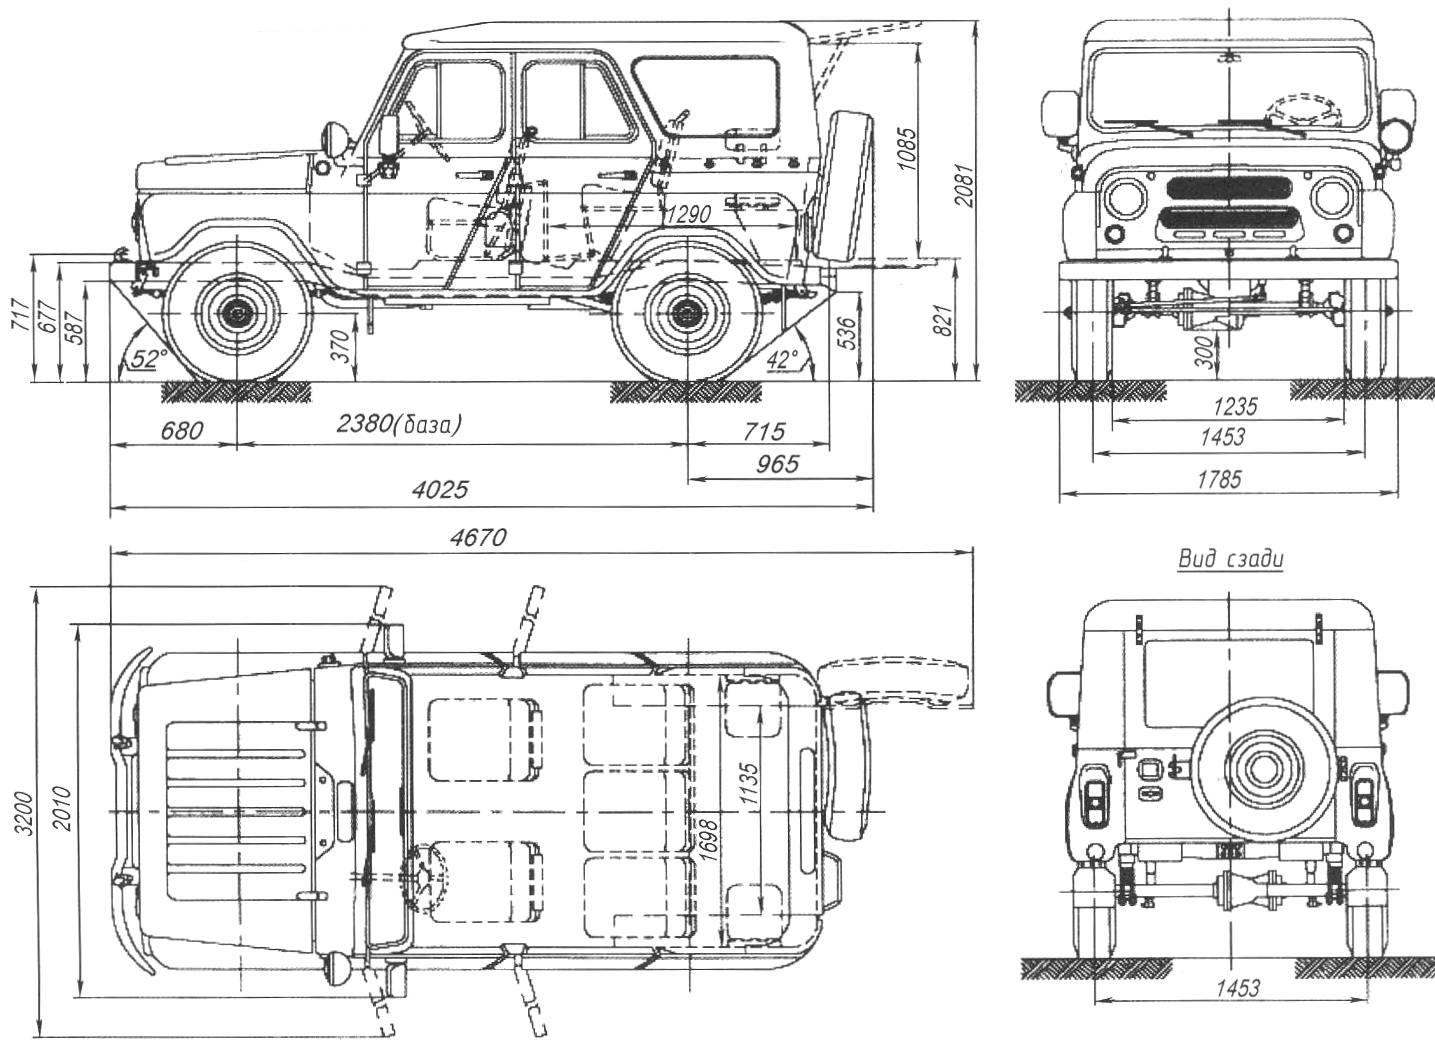 Основные размеры УАЗ-469 (УАЗ-3151) — гражданской модификации армейского вездехода без бортовых редукторов и с металлическим верхом кузова